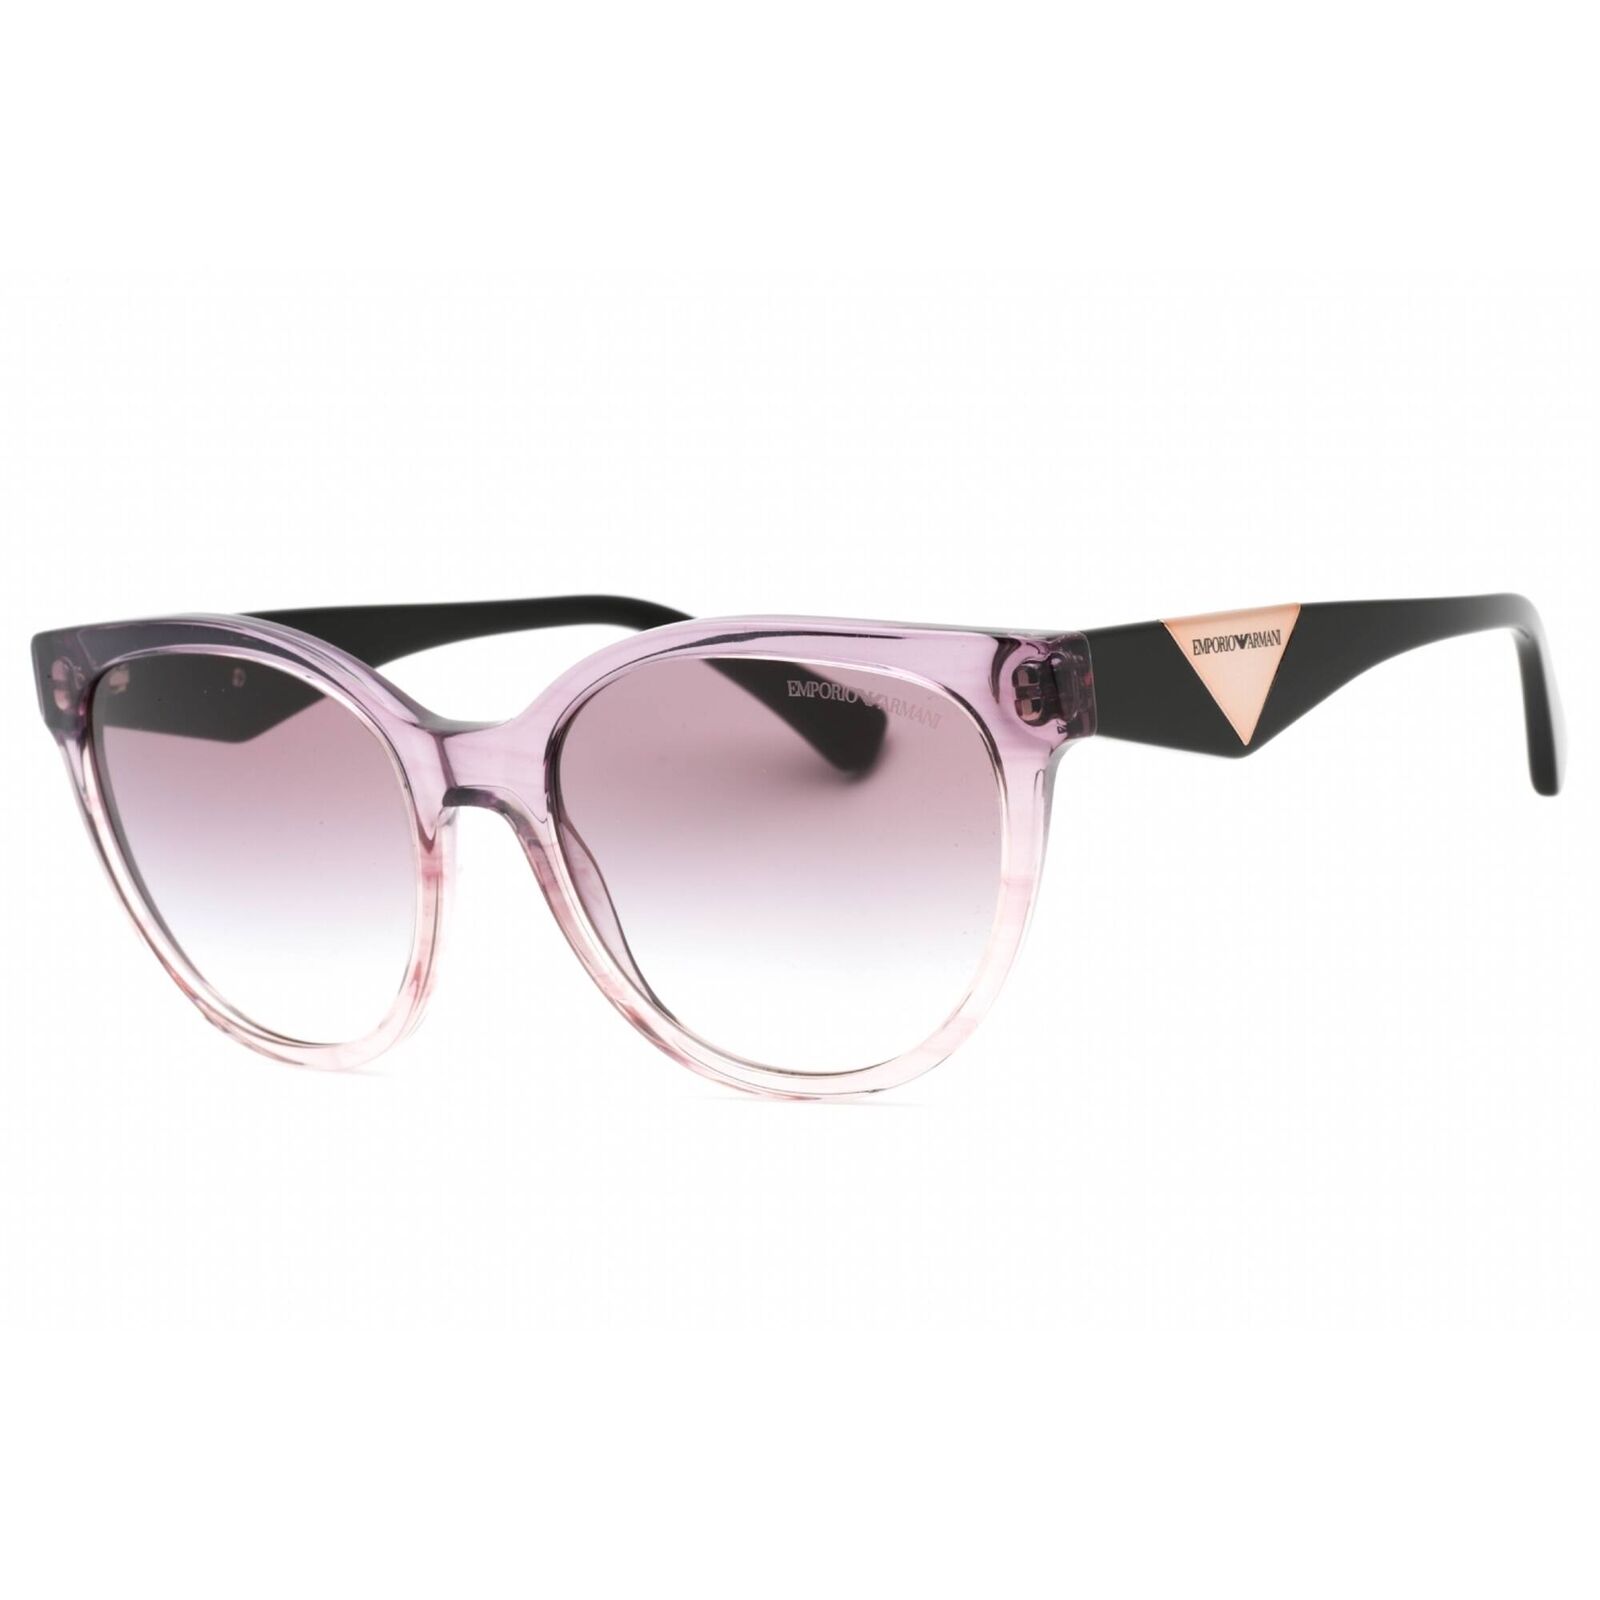 Emporio Armani Women's Sunglasses Gradient Violet Full Rim Frame 0EA4140 59668H Emporio Armani 0EA4140 59668H